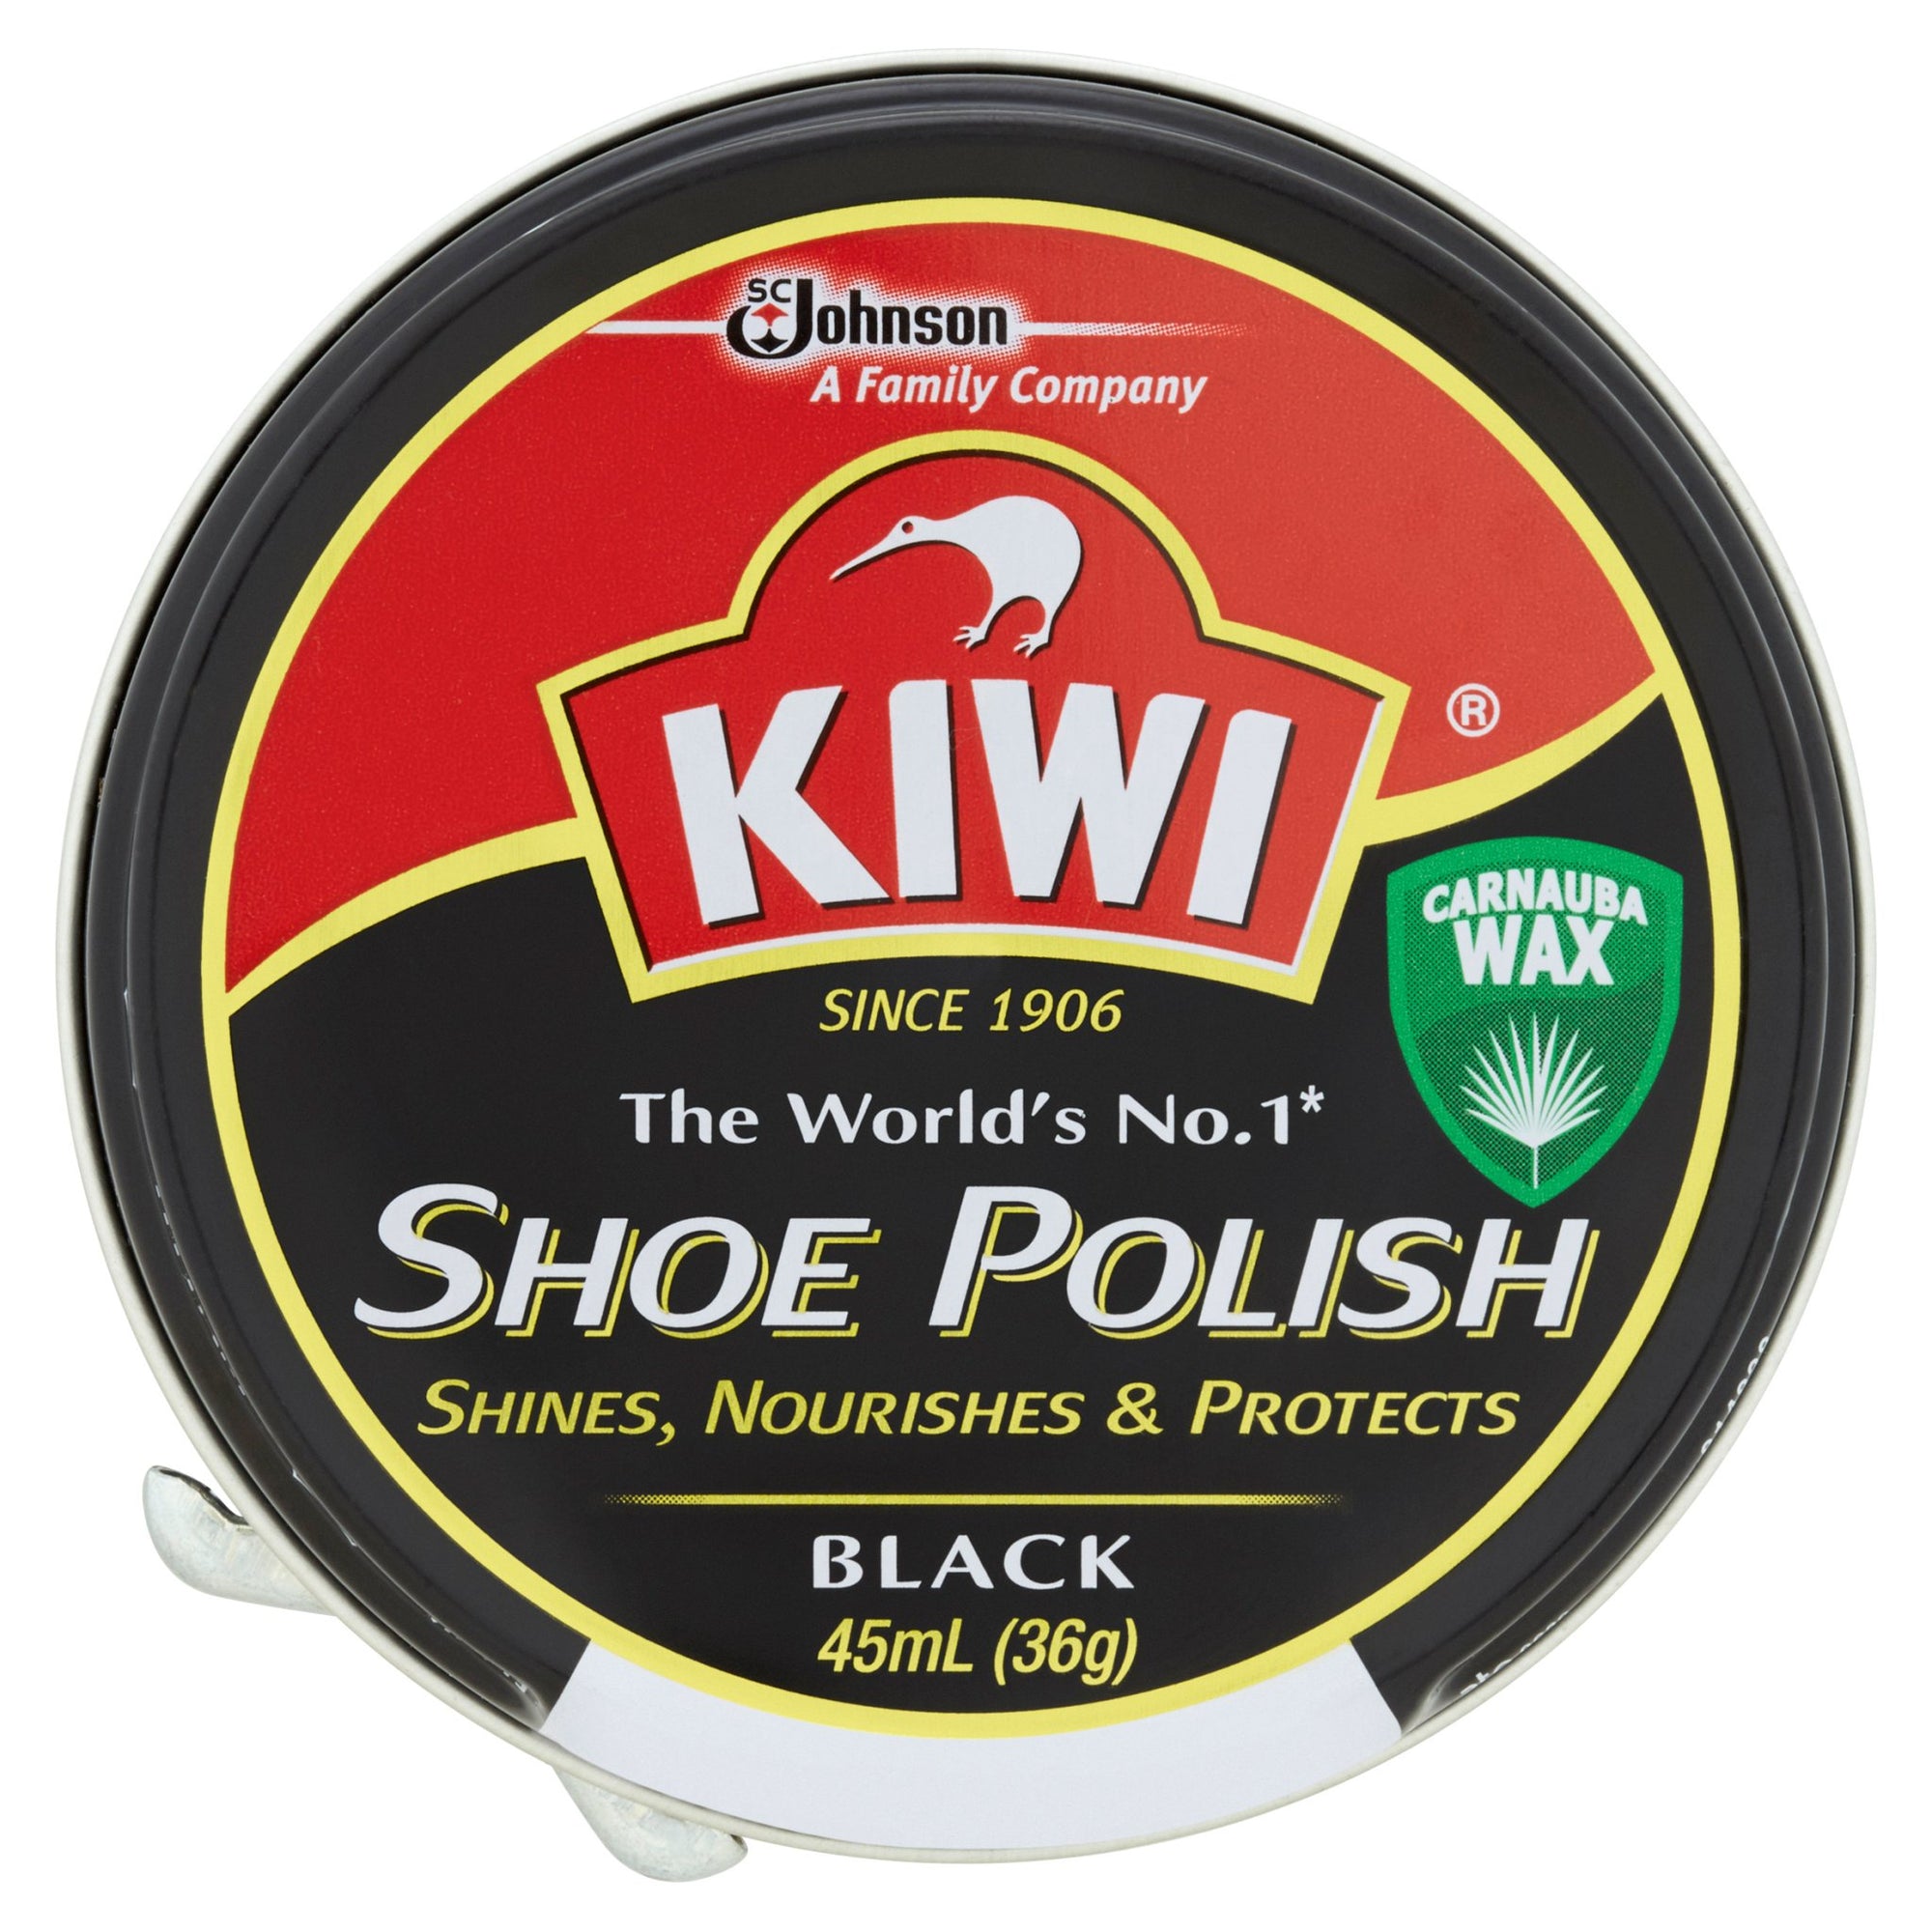 Kiwi Shoe Polish Black 45mL